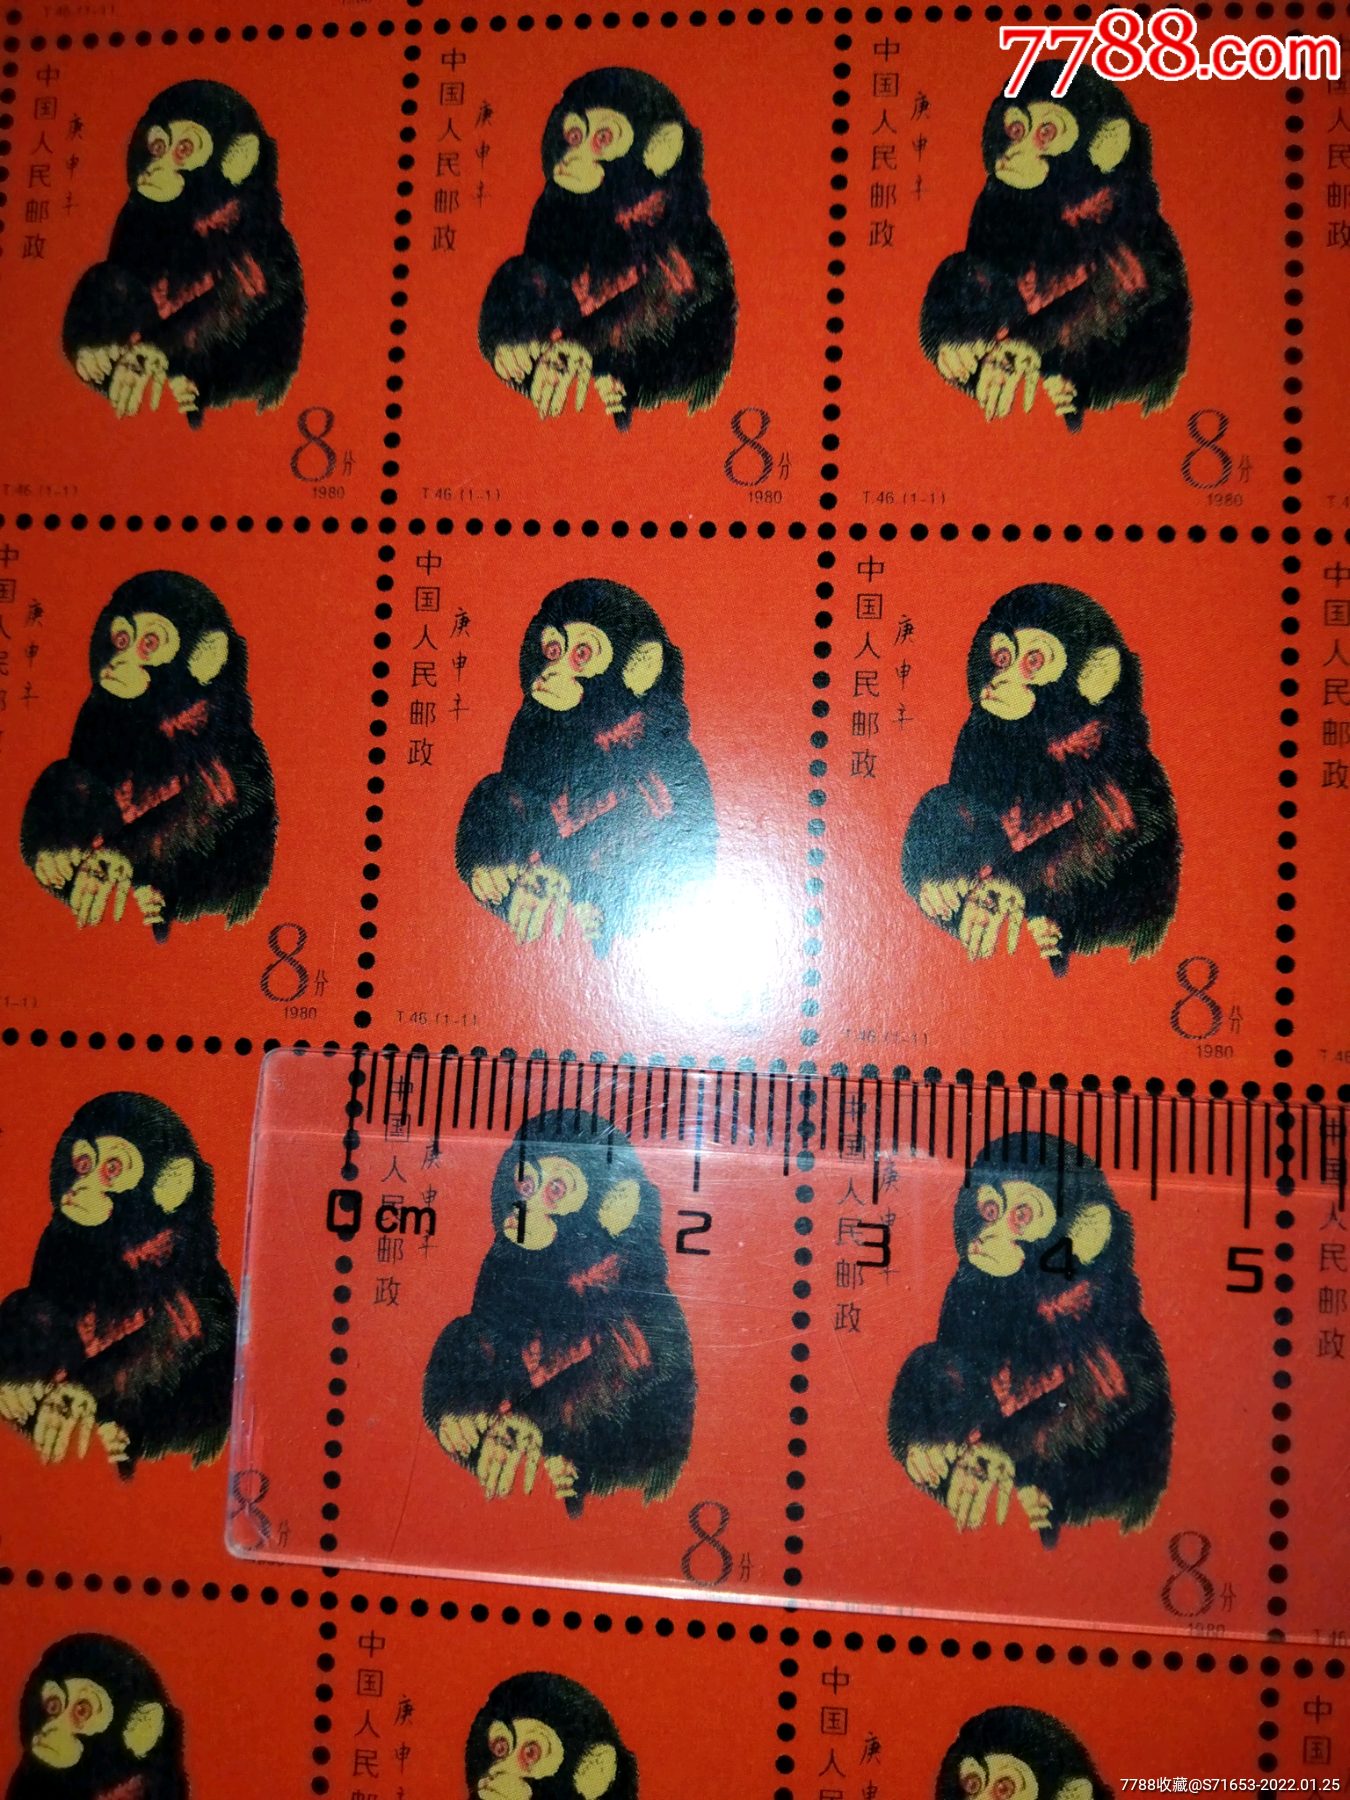 单张10万元邮票 1980图片